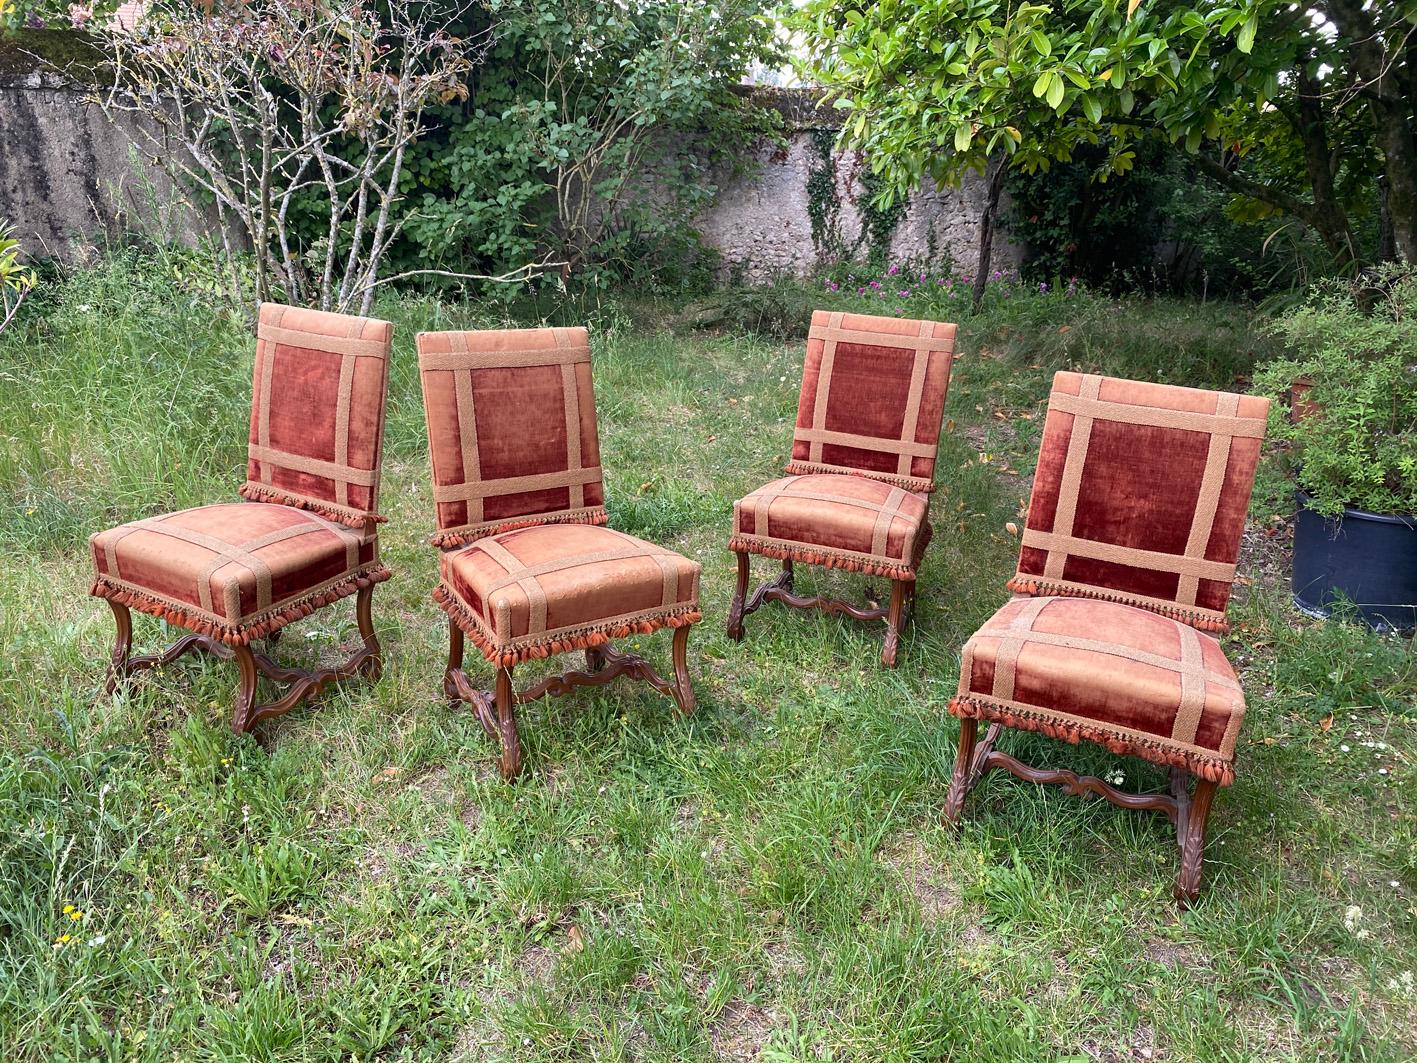  4 grandes chaises anciennes Louis XIV en noyer, 19ème siècle, provenant du château de la Loire.
Tapisserie originale, usée, mais avec une belle patine.
Les chaises ont été récemment remises à neuf, en conservant l'ancien tissu.